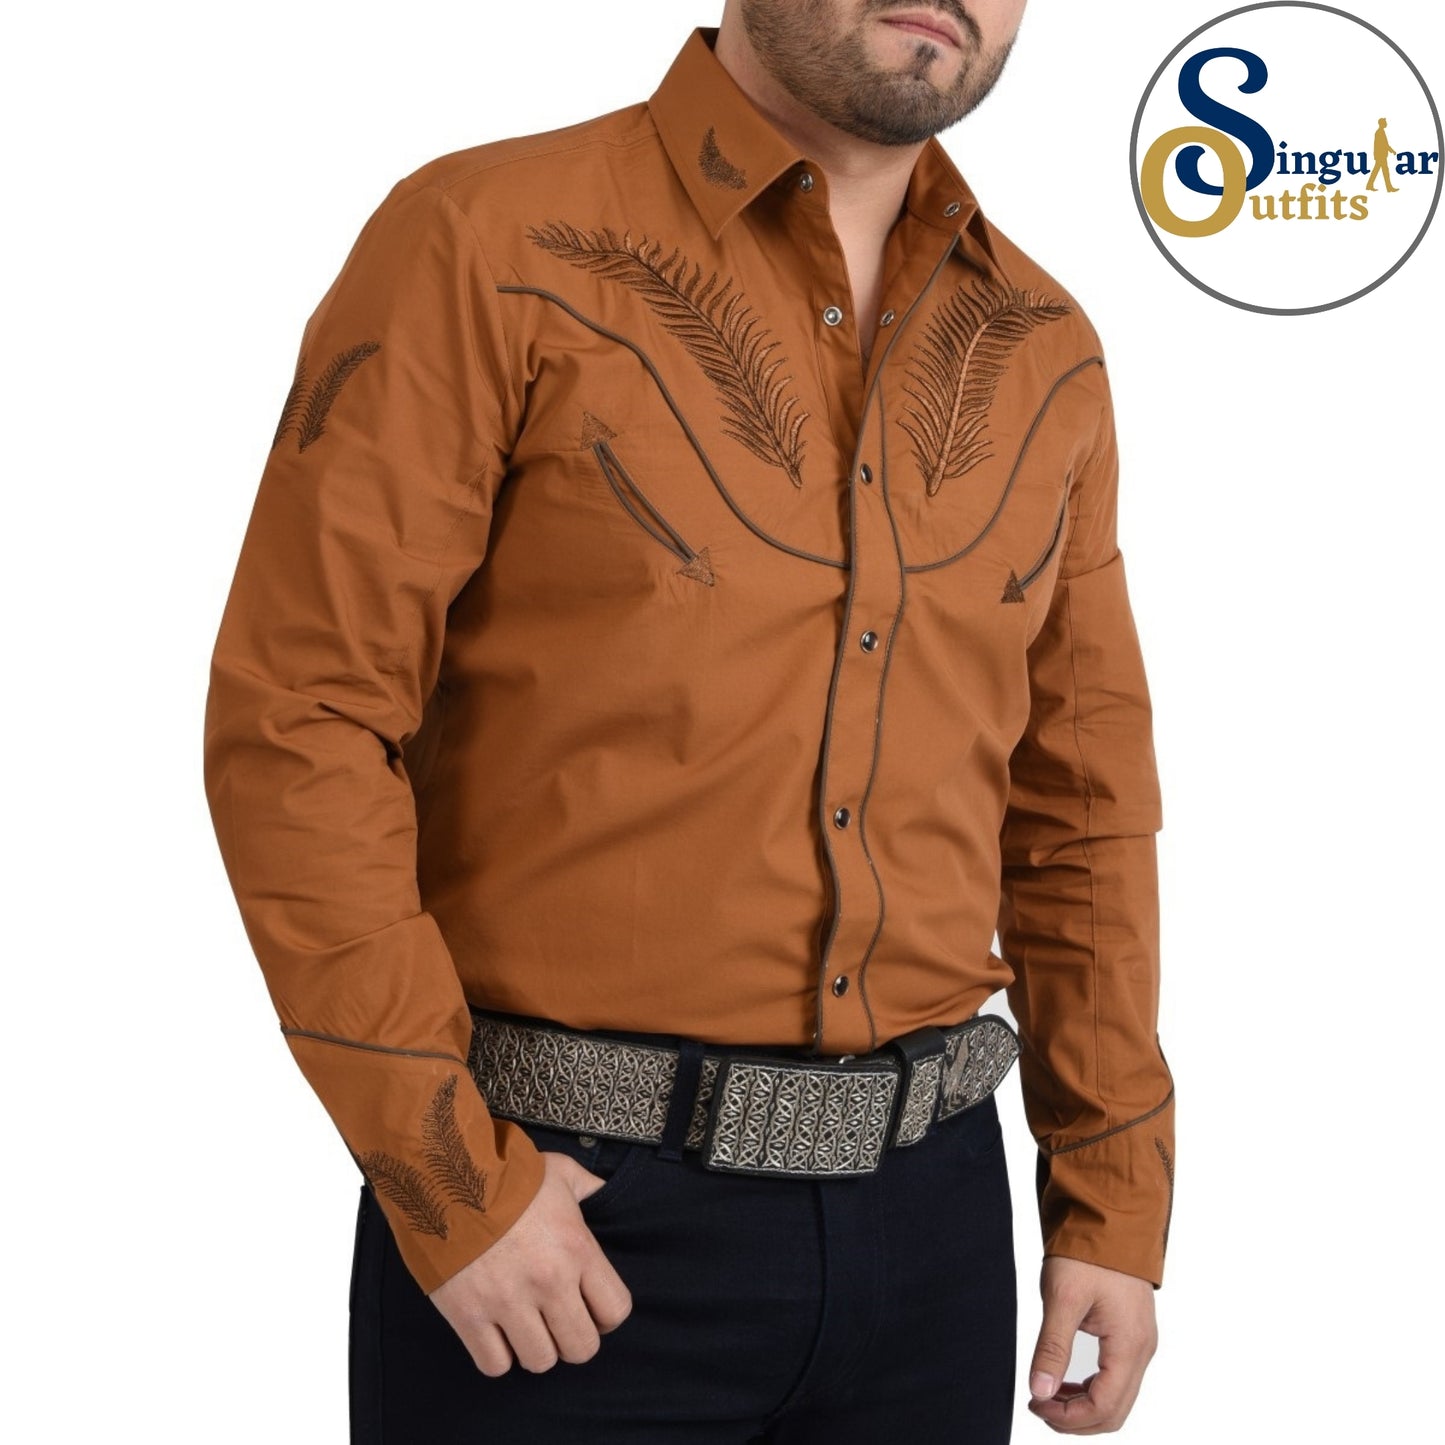 Charro Shirt SO-WD0855 - Camisa Charra para Hombre